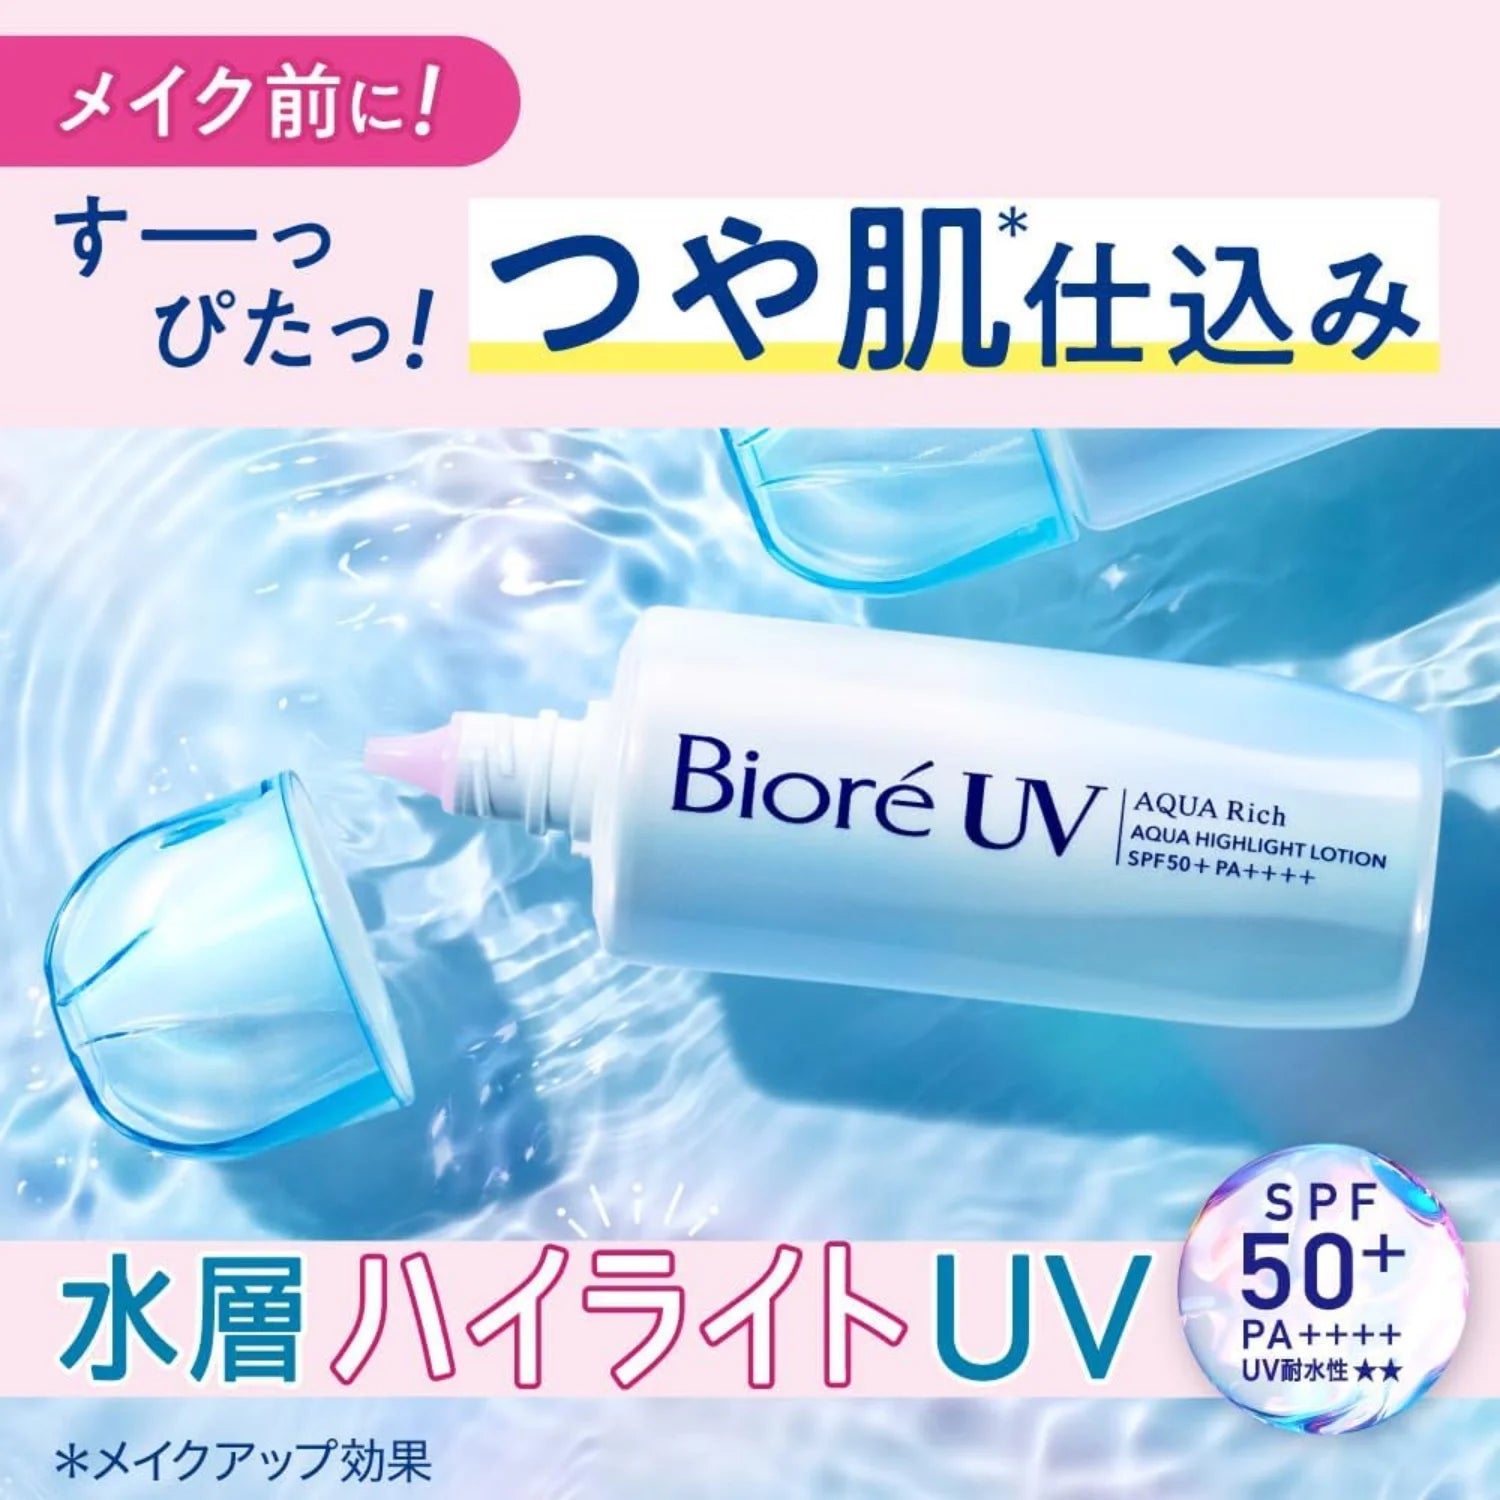 Biore UV Aqua Rich Aqua Highlight Lotion SPF50+ PA++++ 70 ml